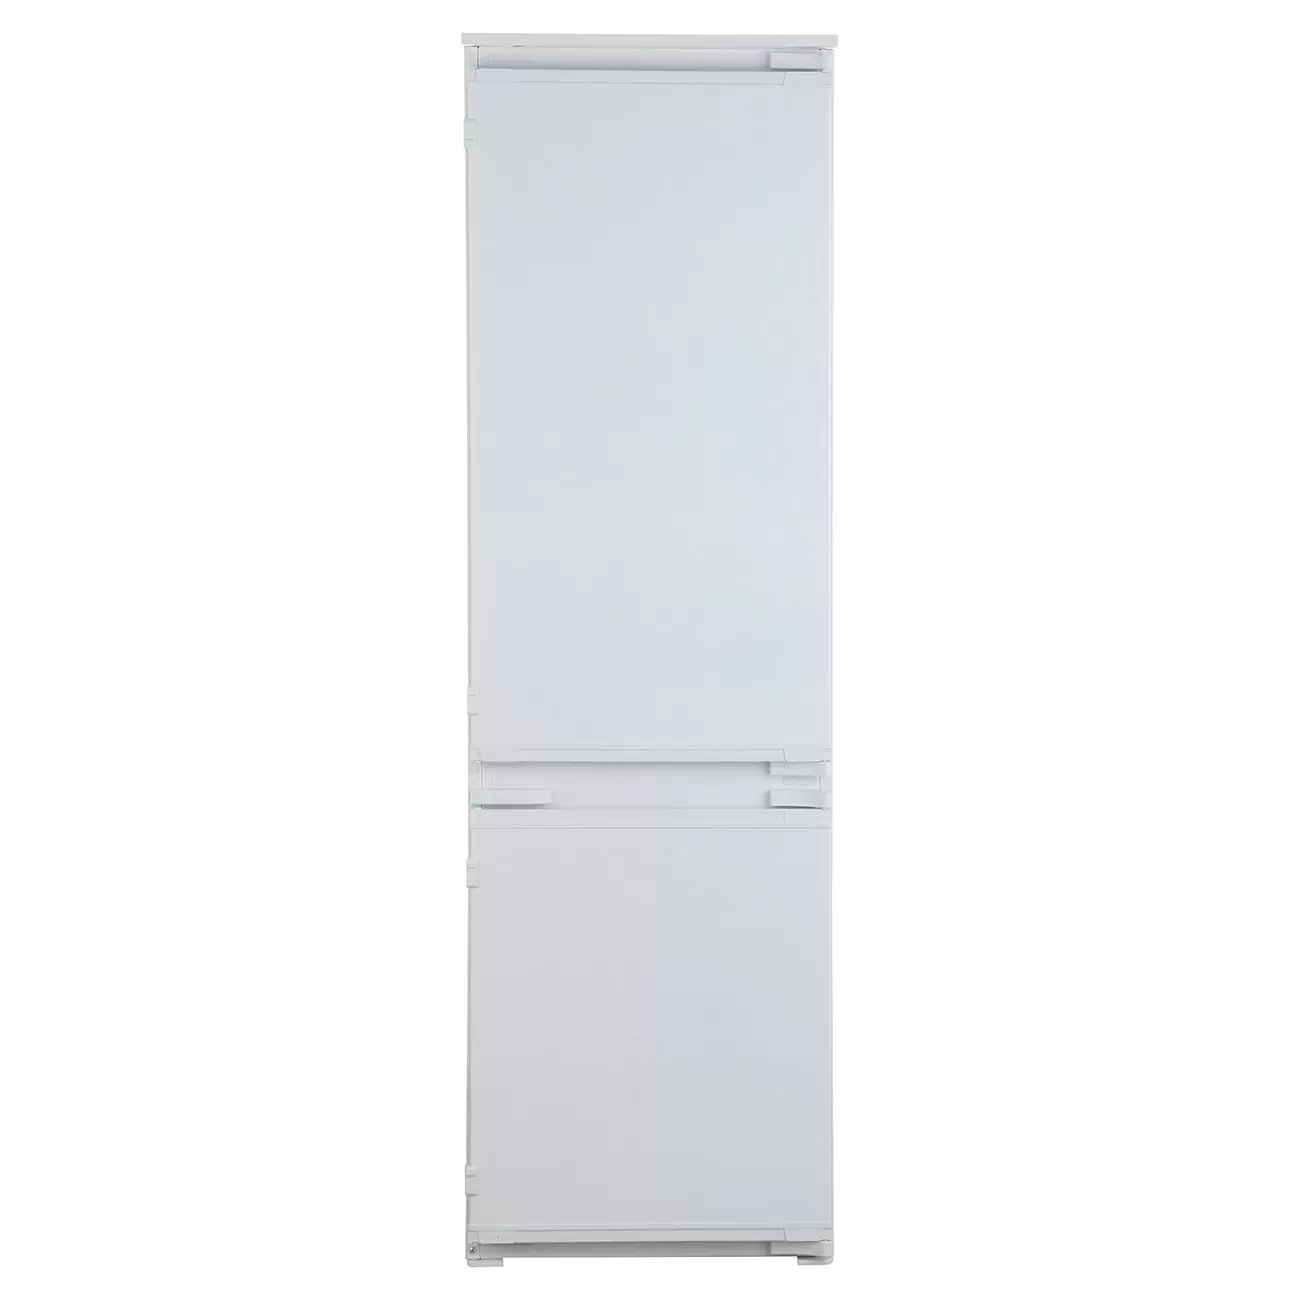 Встраиваемый двухкамерный холодильник Beko BCSA2750 (белый)